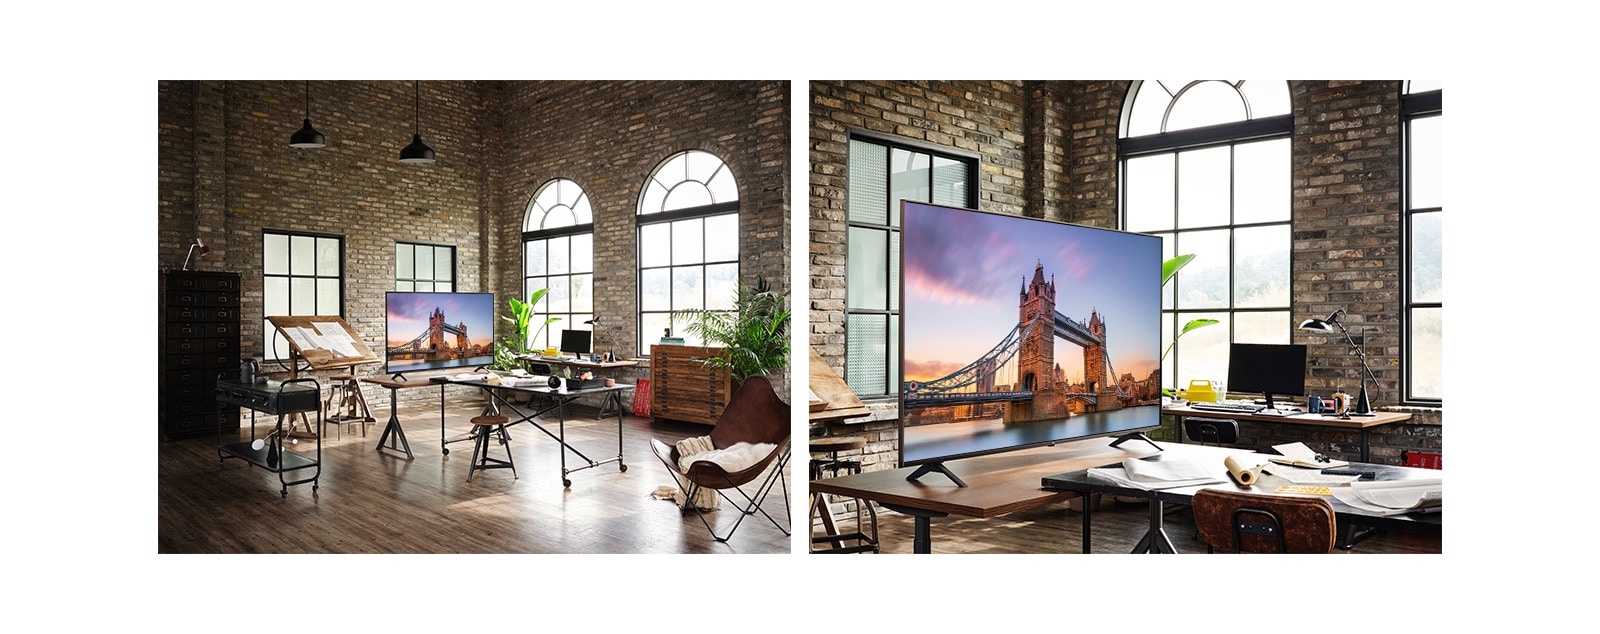 טלוויזיה המציגה תמונה של גשר לונדון נמצאת בחדר עבודה בסגנון עתיק. תקריב של טלוויזיה המציגה תמונה של גשר לונדון נמצאת בחדר עבודה בסגנון עתיק.